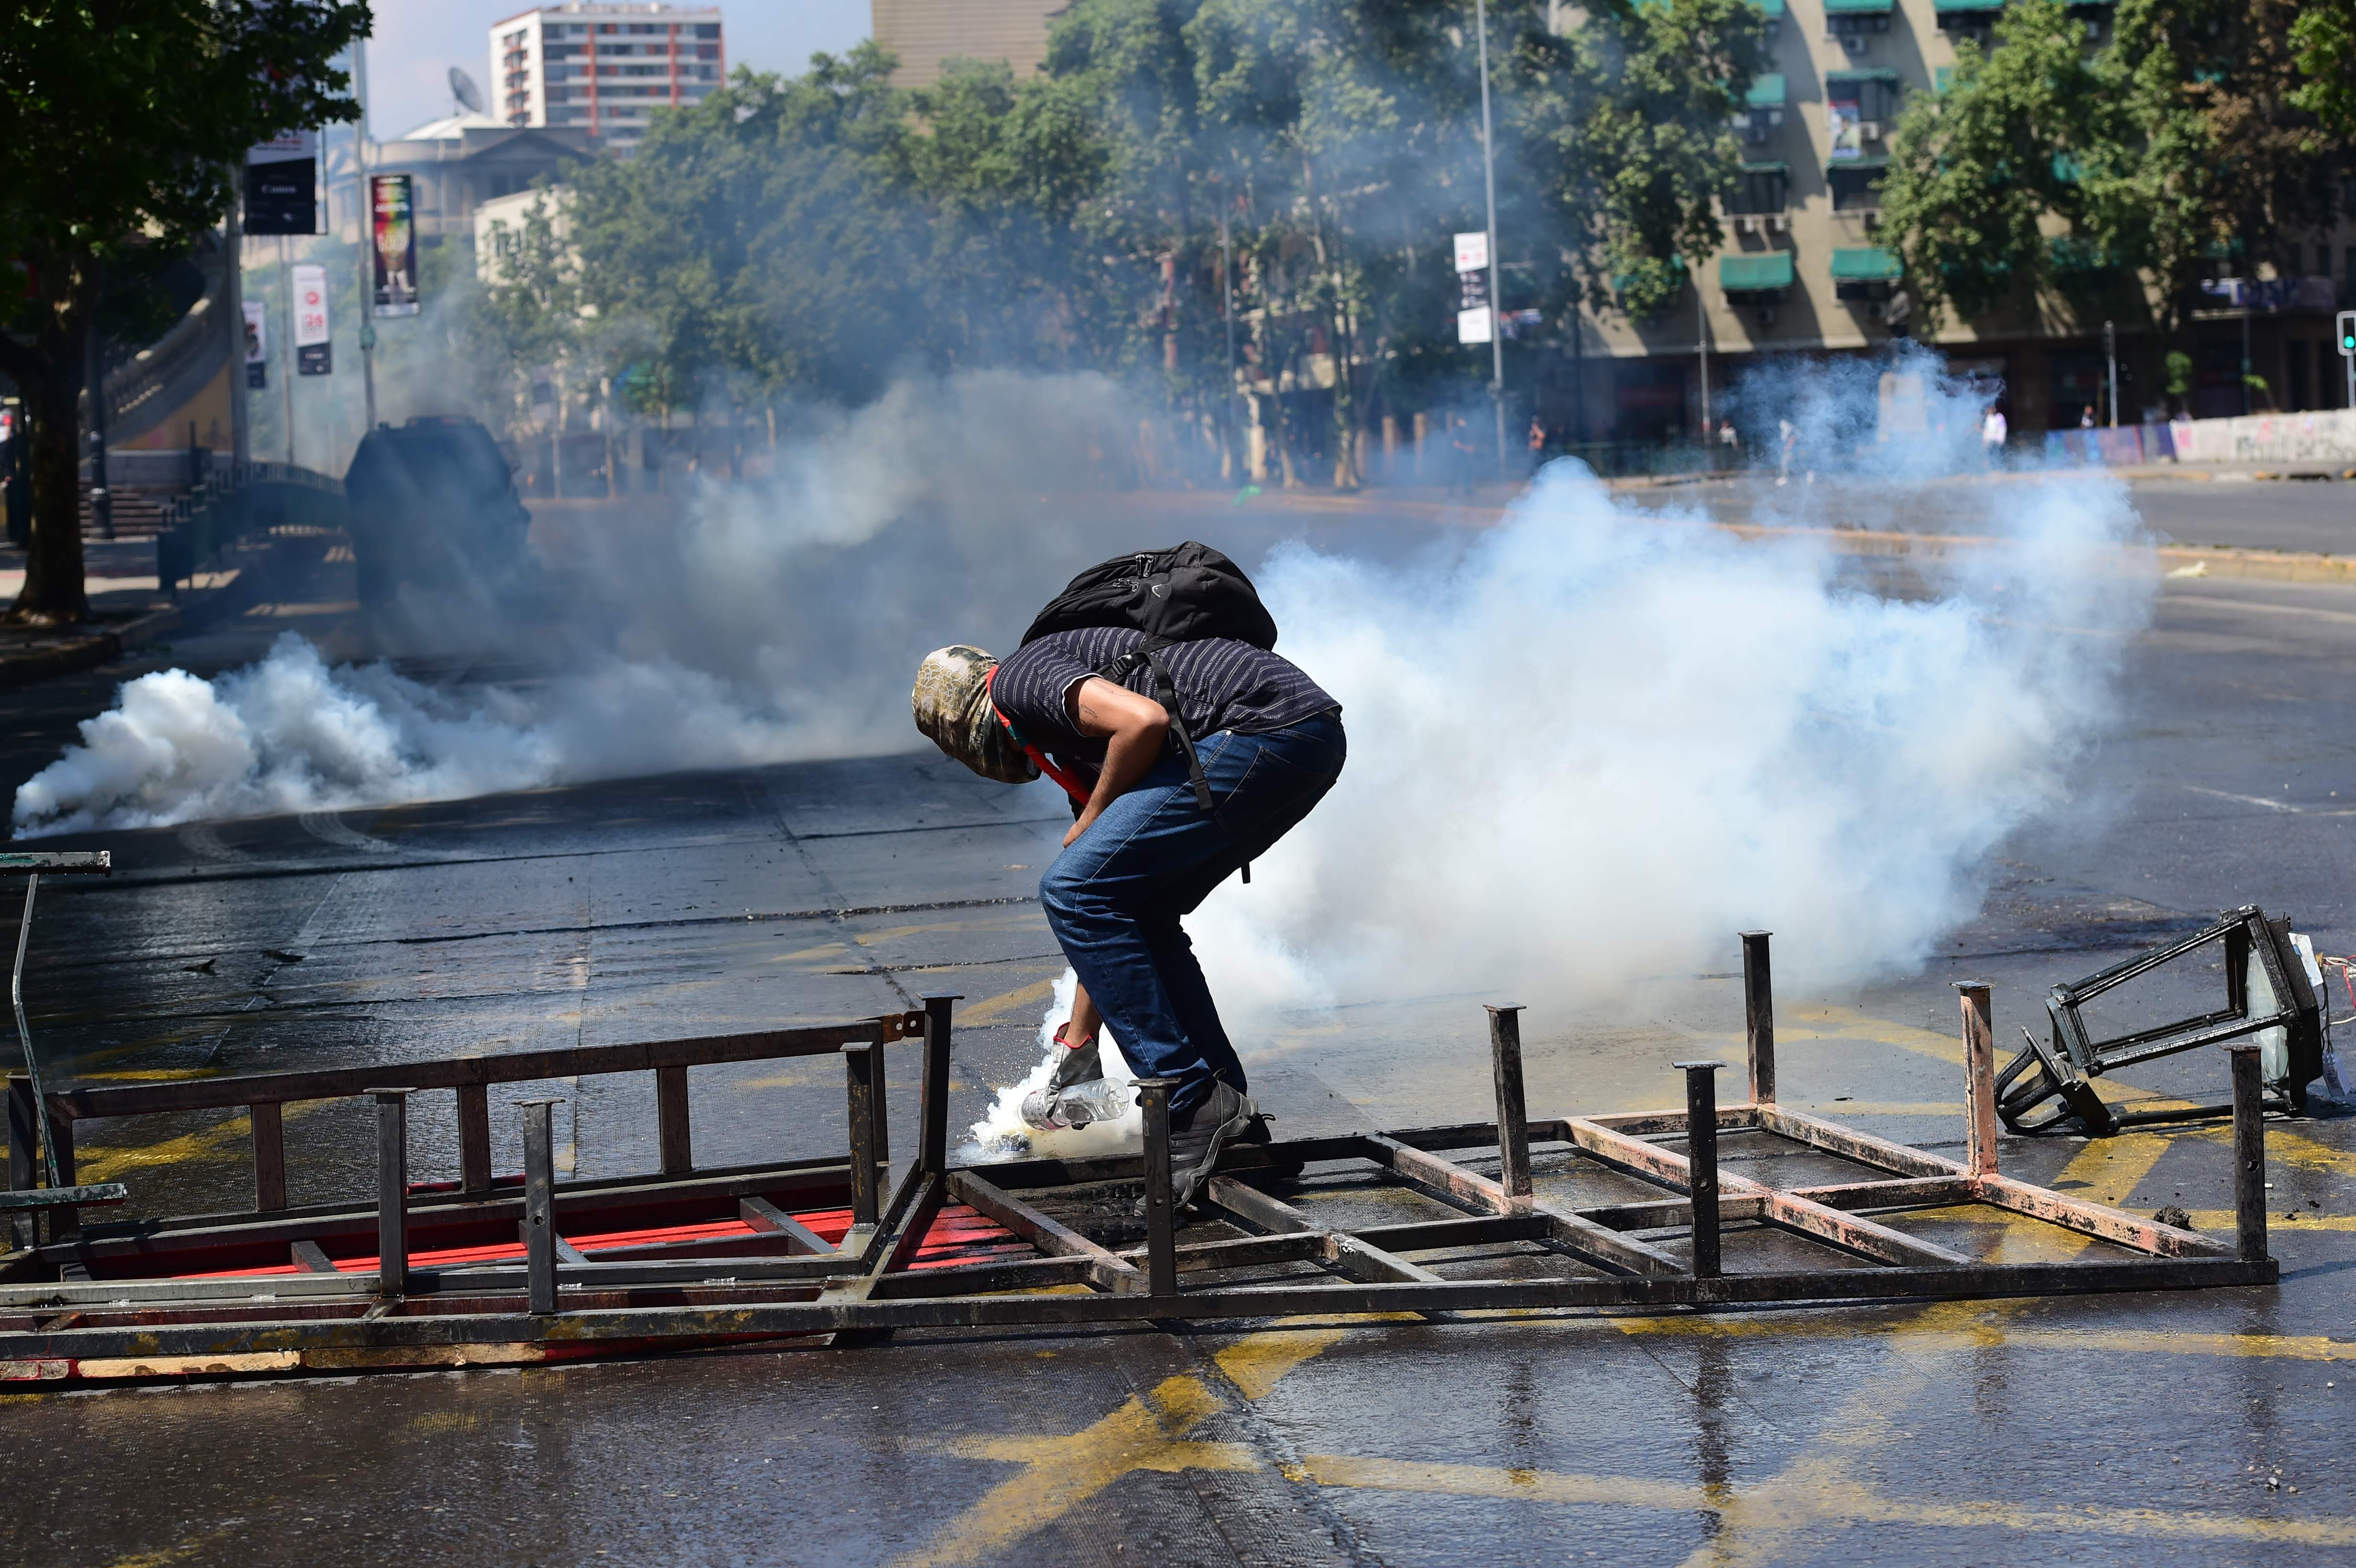 Continúa la tensión en Chile luego de manifestaciones contra el alza al precio del metro. (Foto Prensa Libre: AFP)